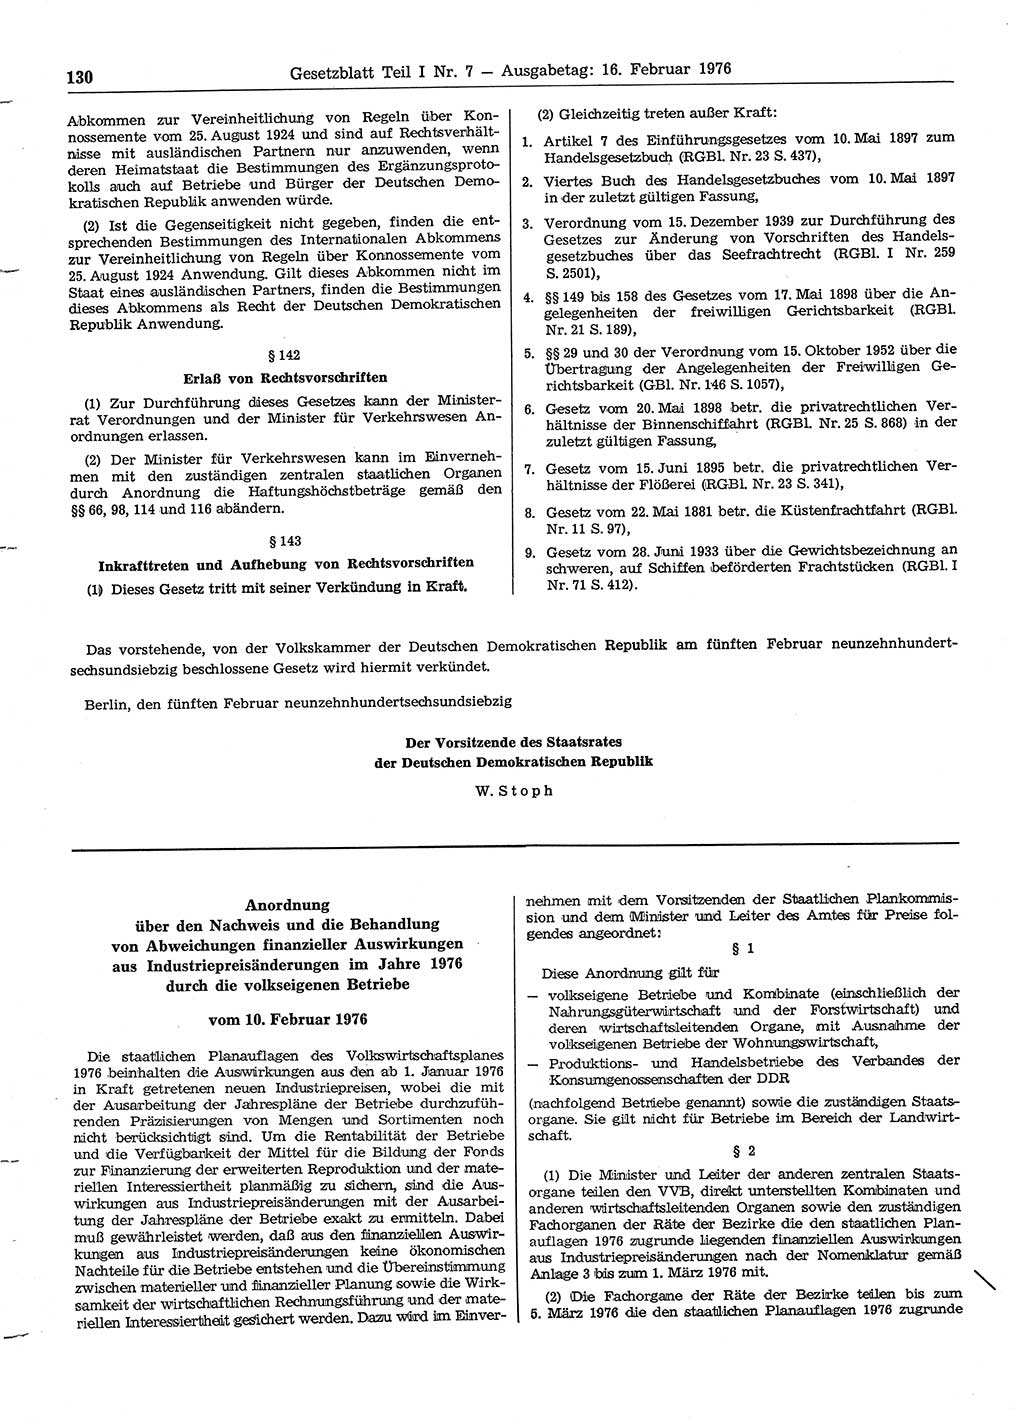 Gesetzblatt (GBl.) der Deutschen Demokratischen Republik (DDR) Teil Ⅰ 1976, Seite 130 (GBl. DDR Ⅰ 1976, S. 130)